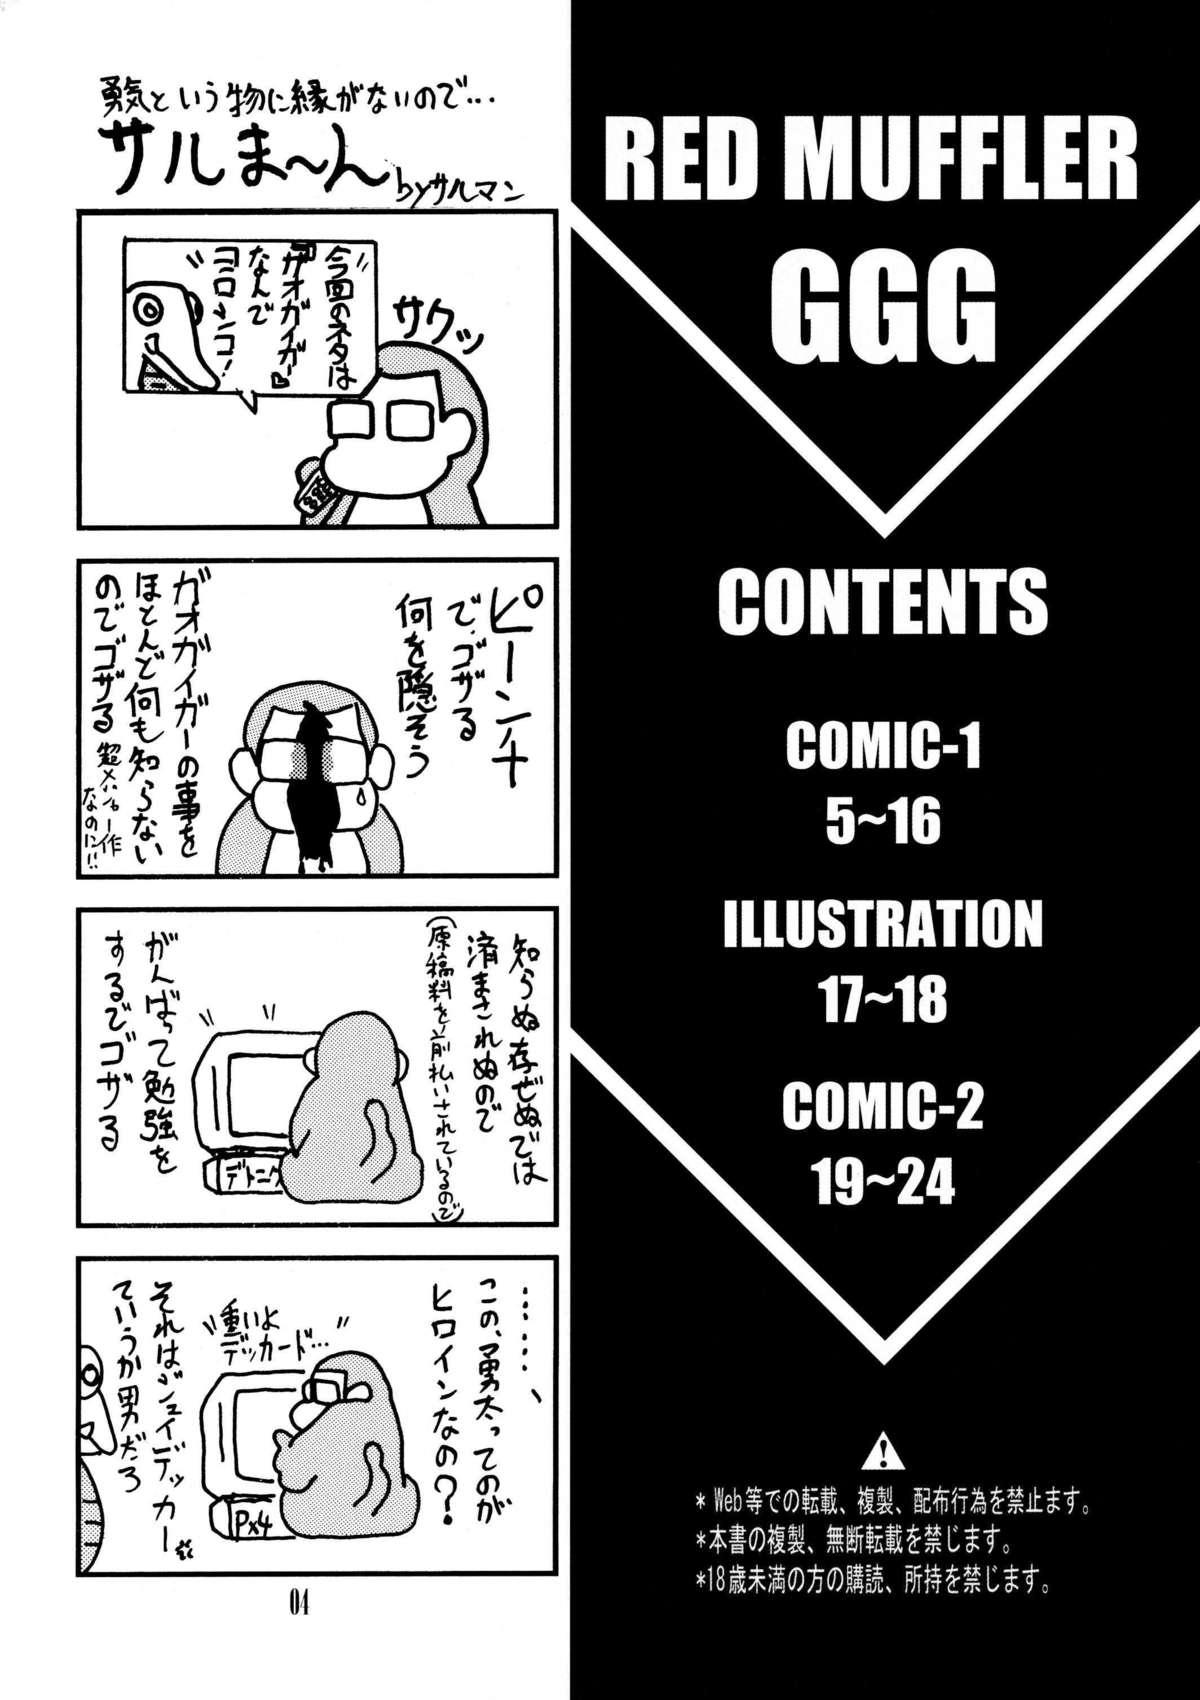 Gang Bang Red Muffler GGG - Gaogaigar Teenfuns - Page 3